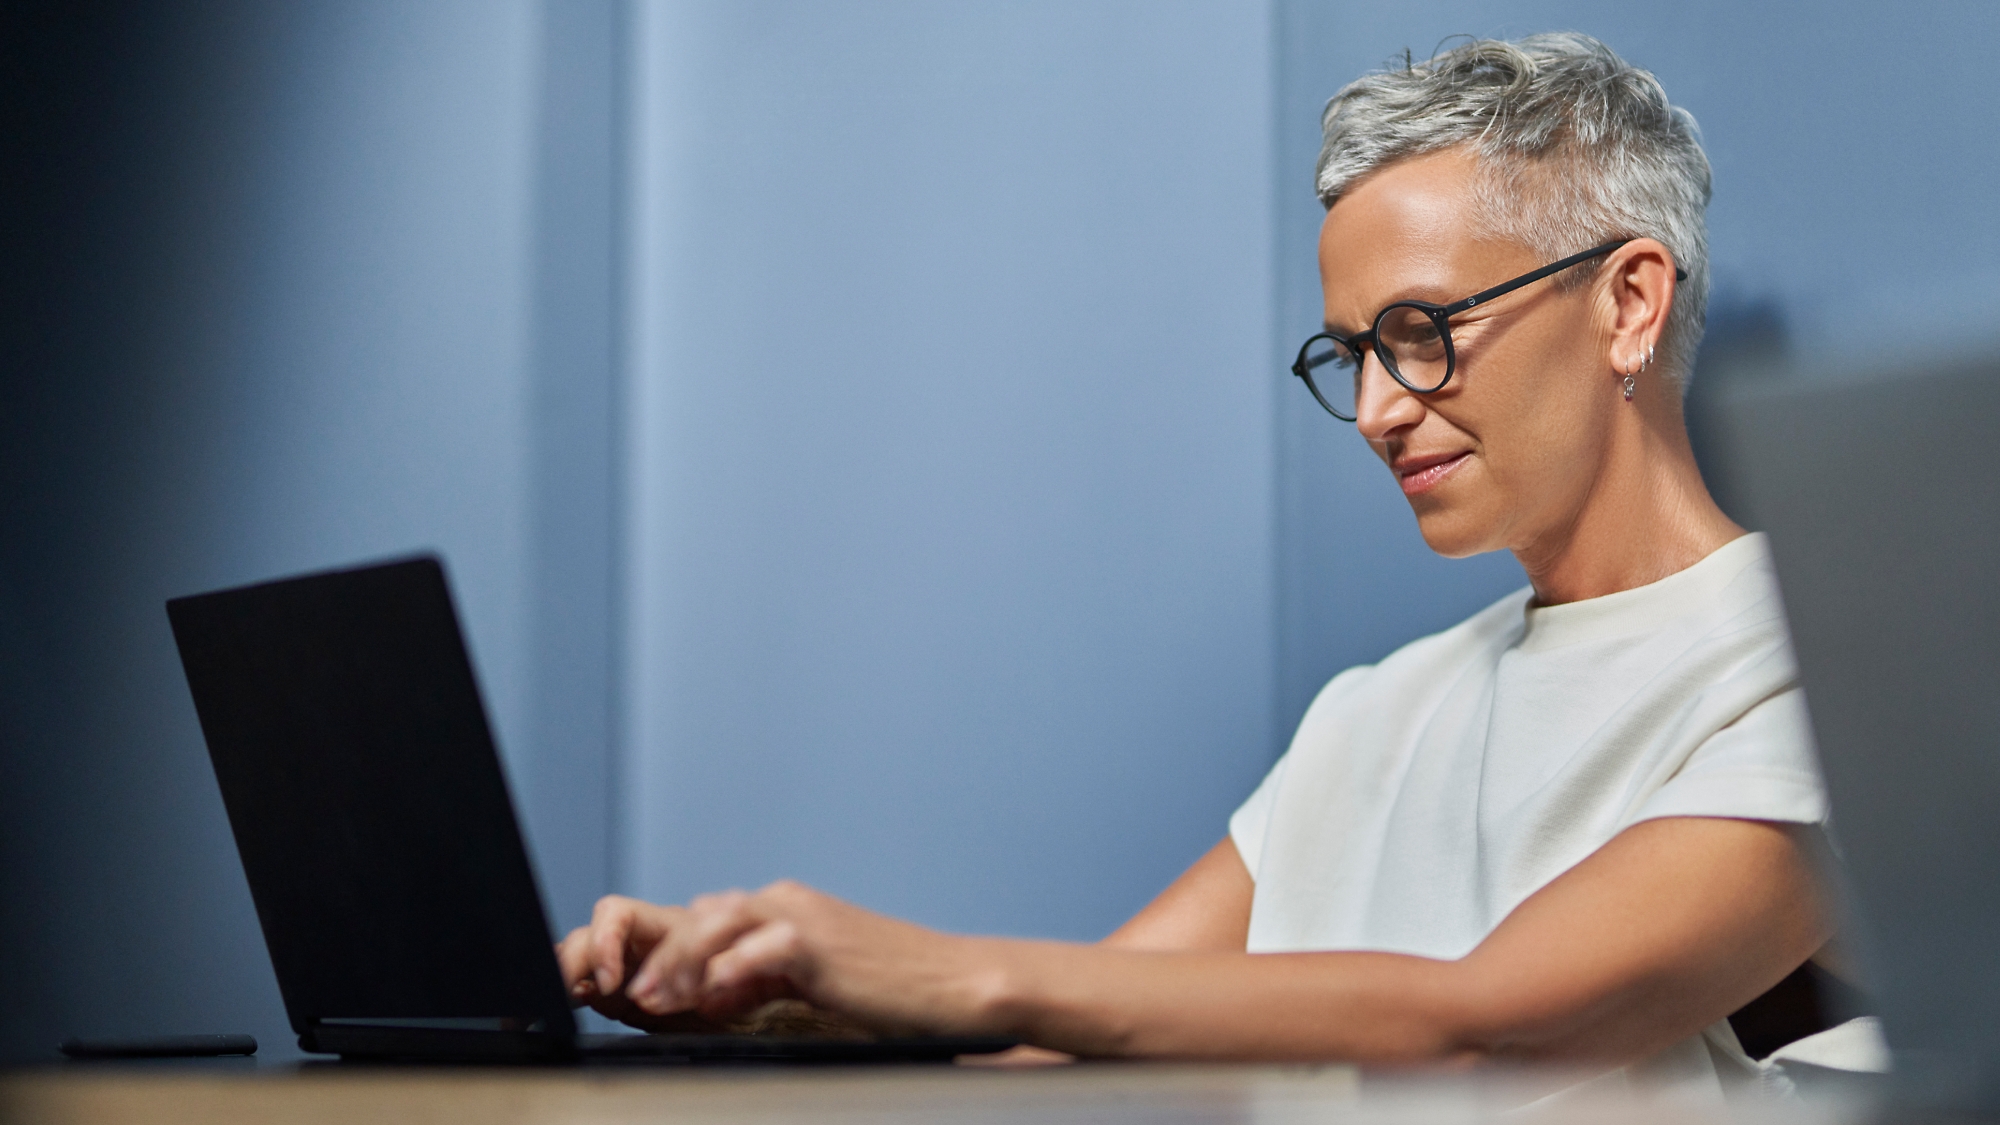 Femme mûre avec des cheveux gris courts souriants et travaillant sur un ordinateur portable dans un environnement de bureau moderne.